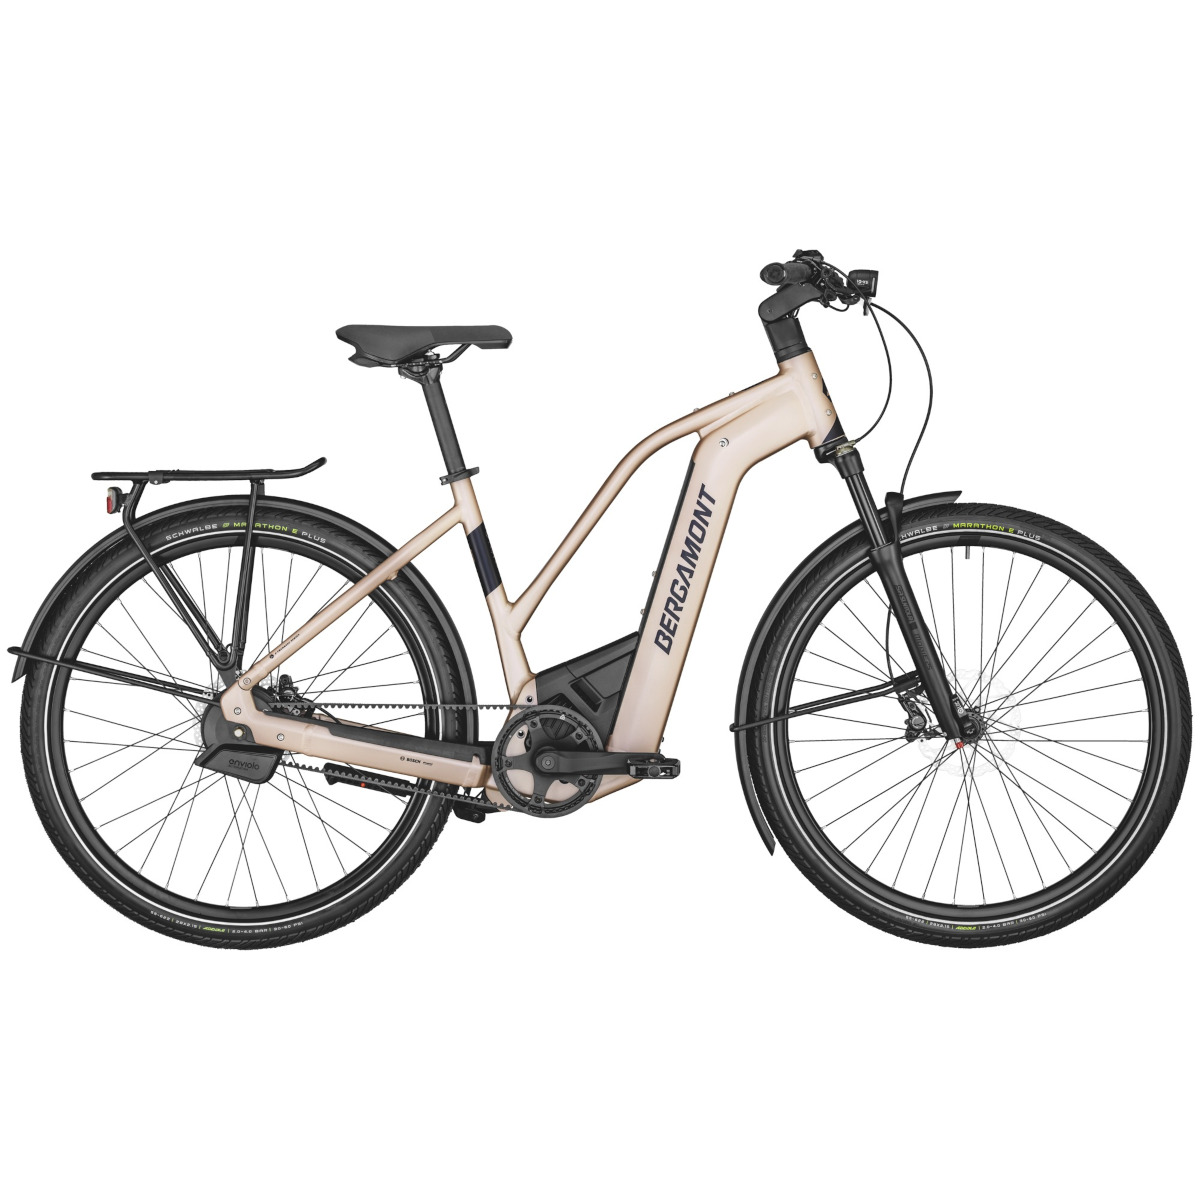 Productfoto van Bergamont E-HORIZON PREMIUM PRO BELT LADY - Trekking E-Bike - 2022 - rose gold